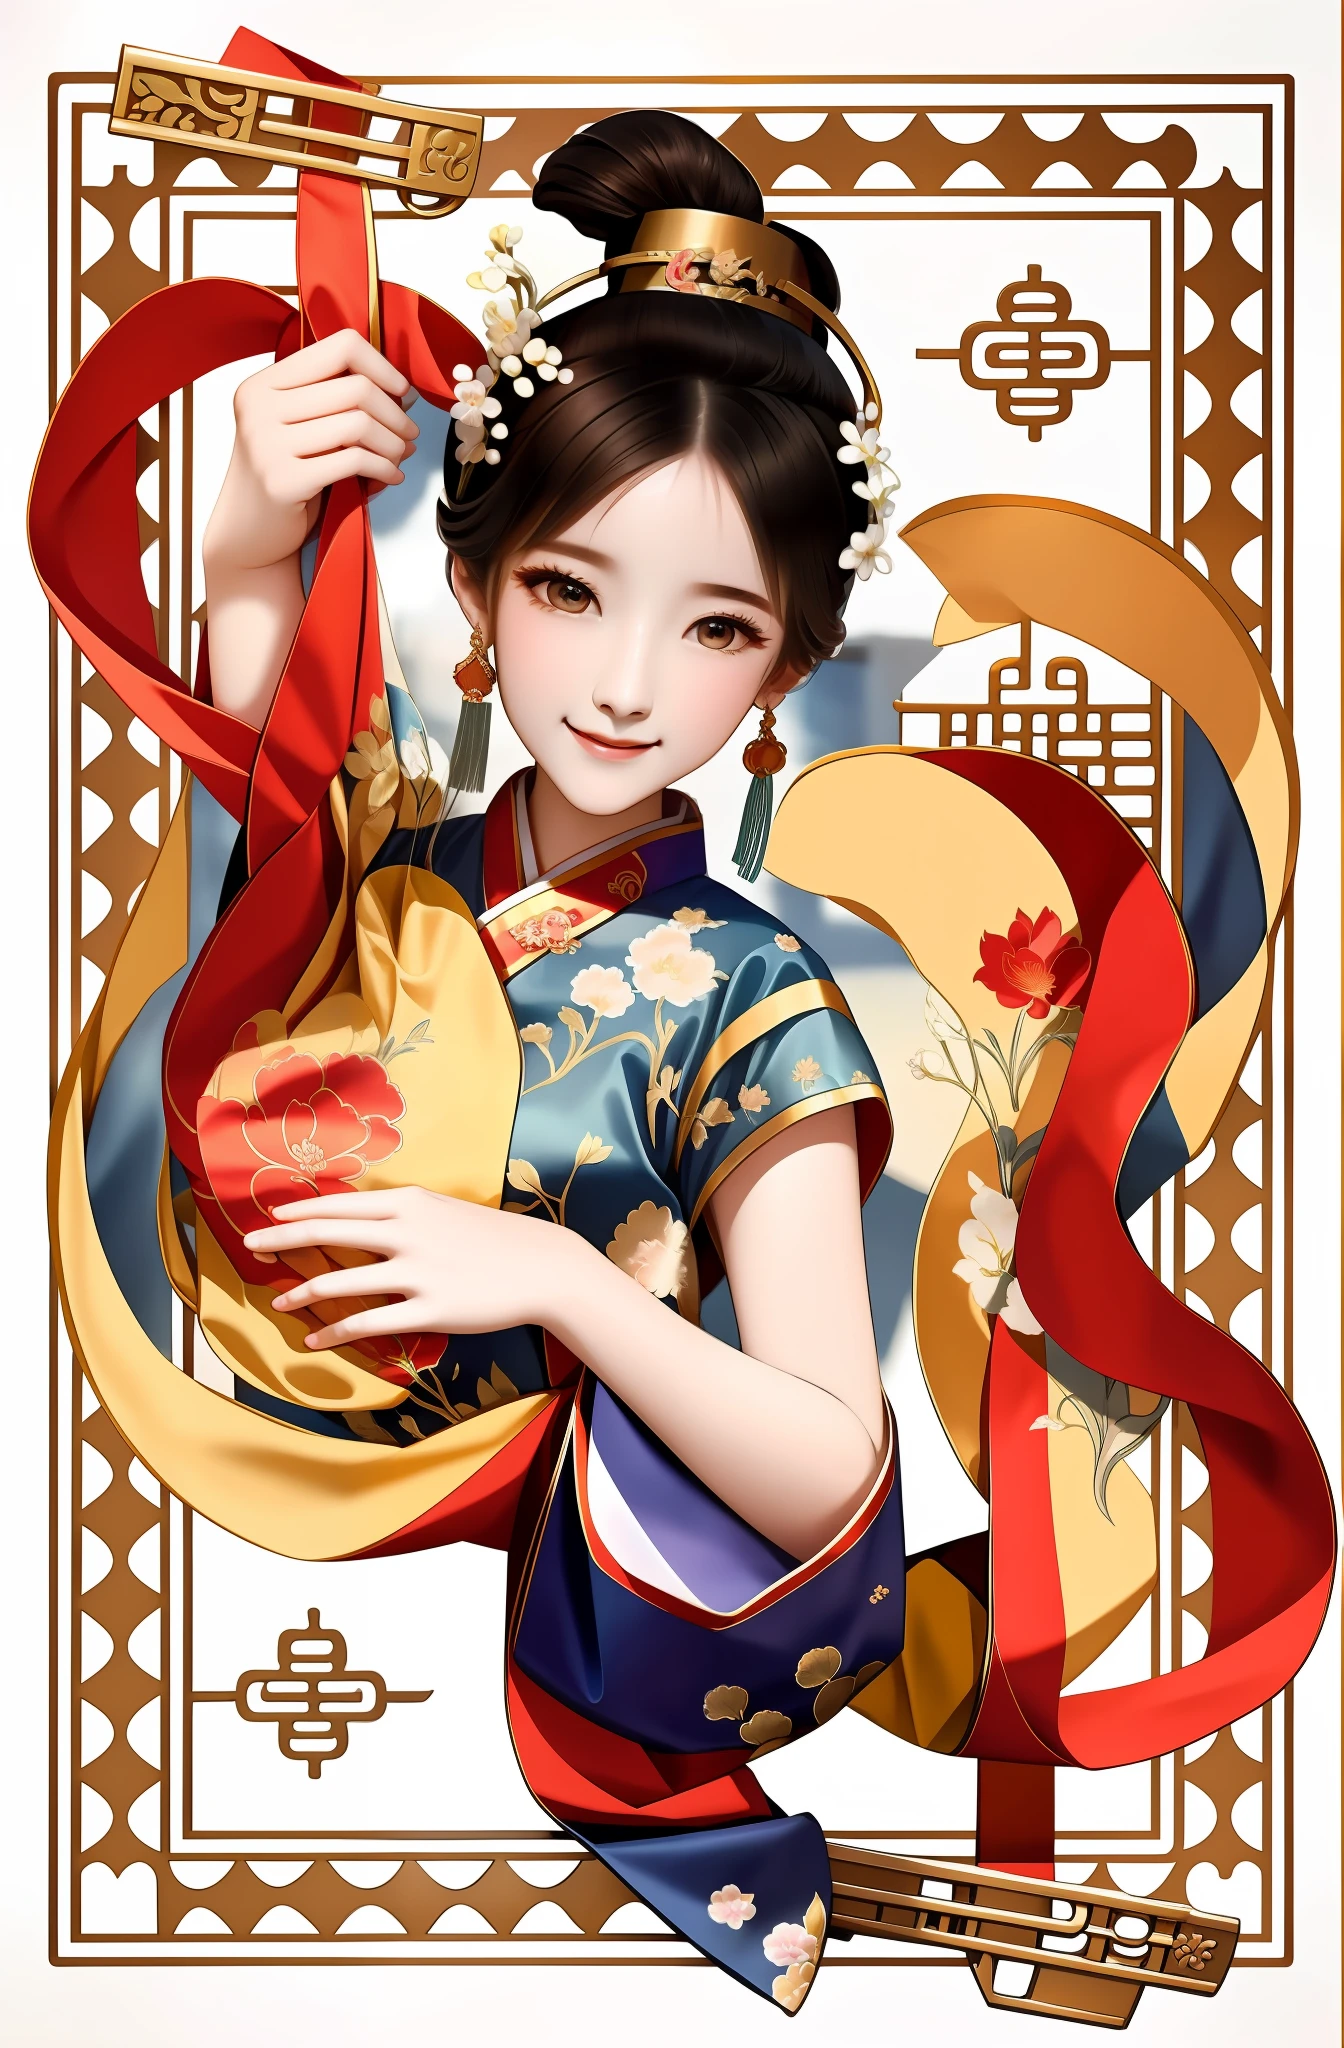 Nahaufnahme einer Frau, die ein Instrument hält, Palast ， mädchen in hanfu, Eine wunderschöne Kunstwerk-Illustration, alte chinesische Schönheit, inspiriert von Wu Bin, Alte chinesische Prinzessin, chinesisches Mädchen, Inspiriert von Song Maojin, alter chinesischer Kunststil, inspiriert von Gong Xian, Kunstwerke im Guviz-Stil, inspiriert von Park Hua